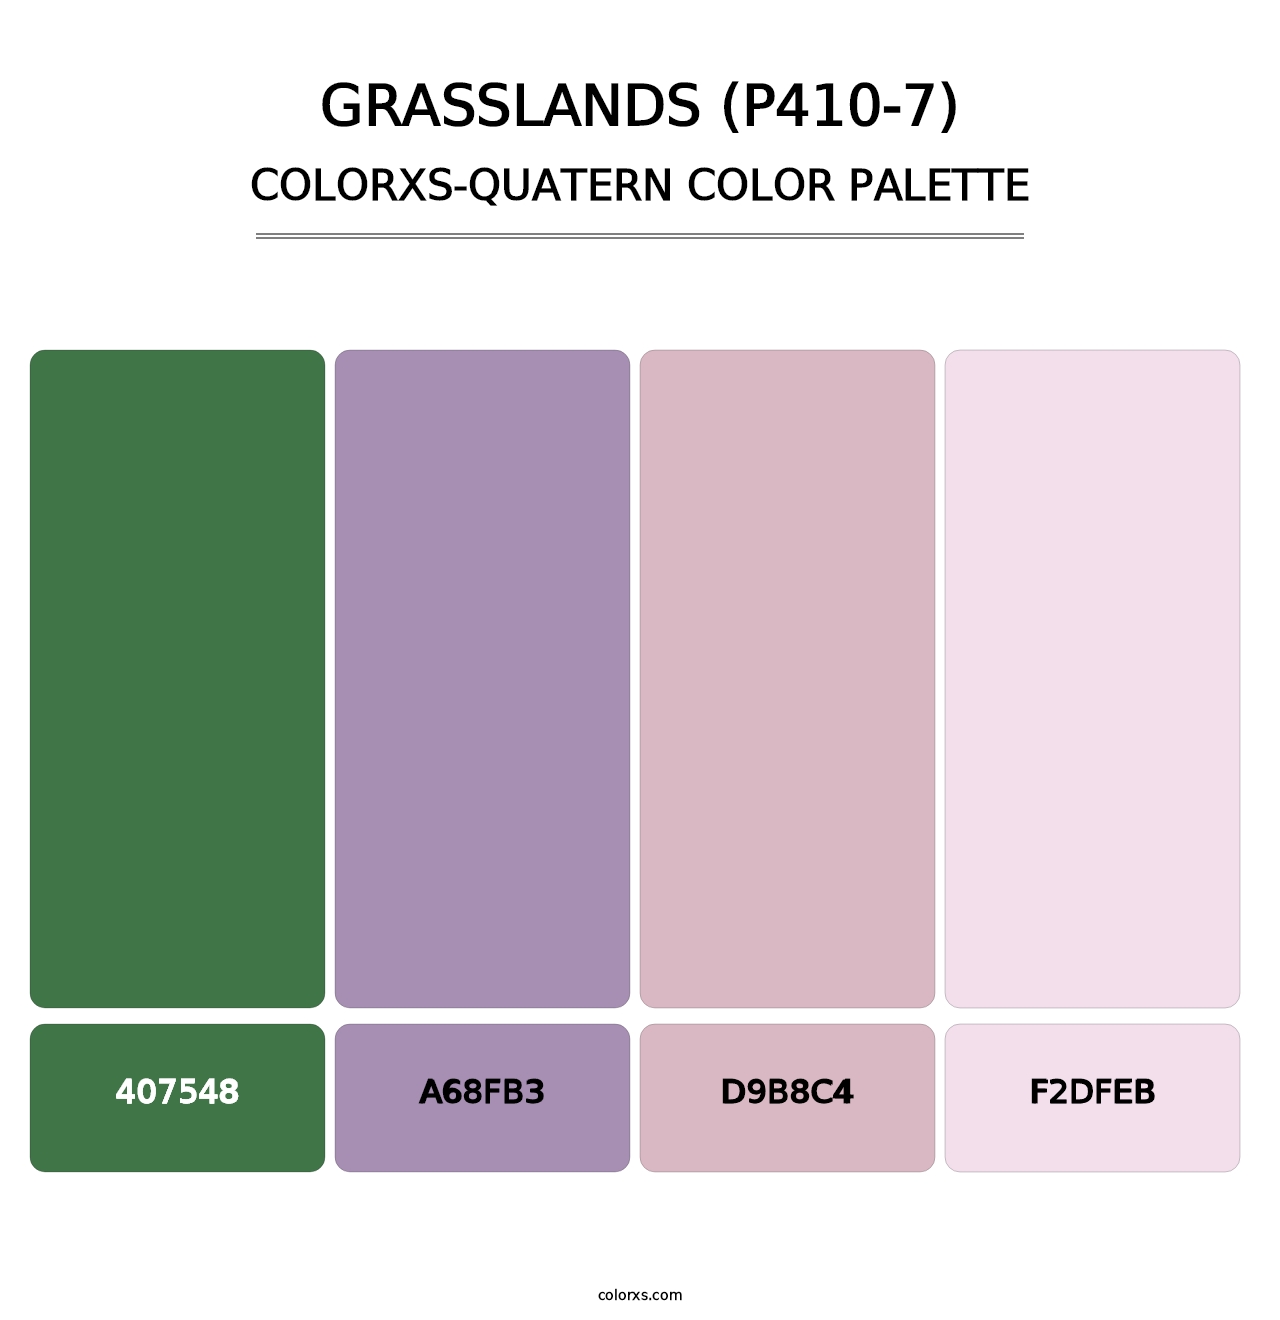 Grasslands (P410-7) - Colorxs Quatern Palette